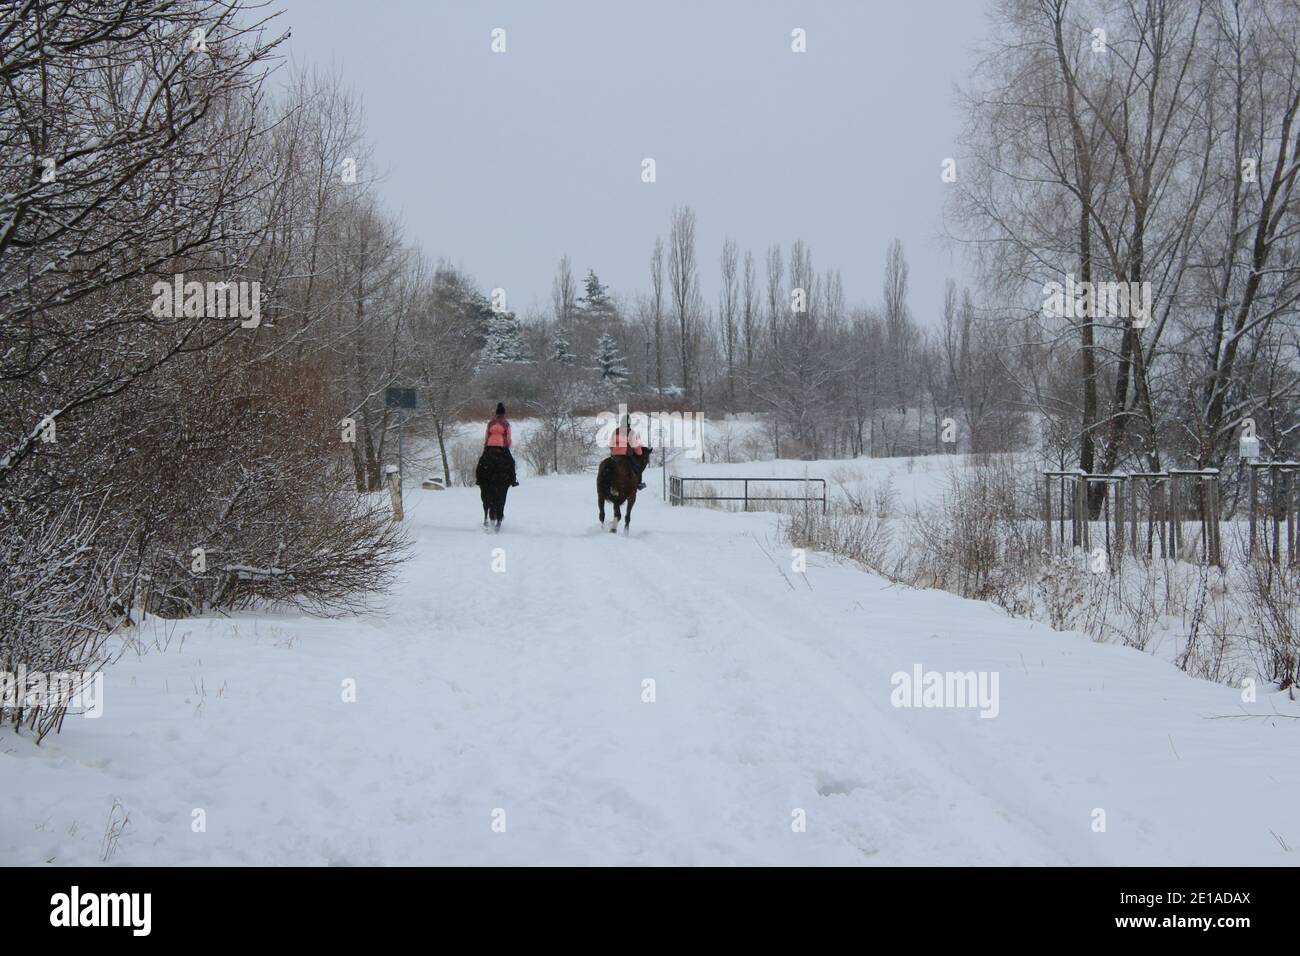 cavalcare su due cavalli neri nella neve in inverno paese delle meraviglie Foto Stock